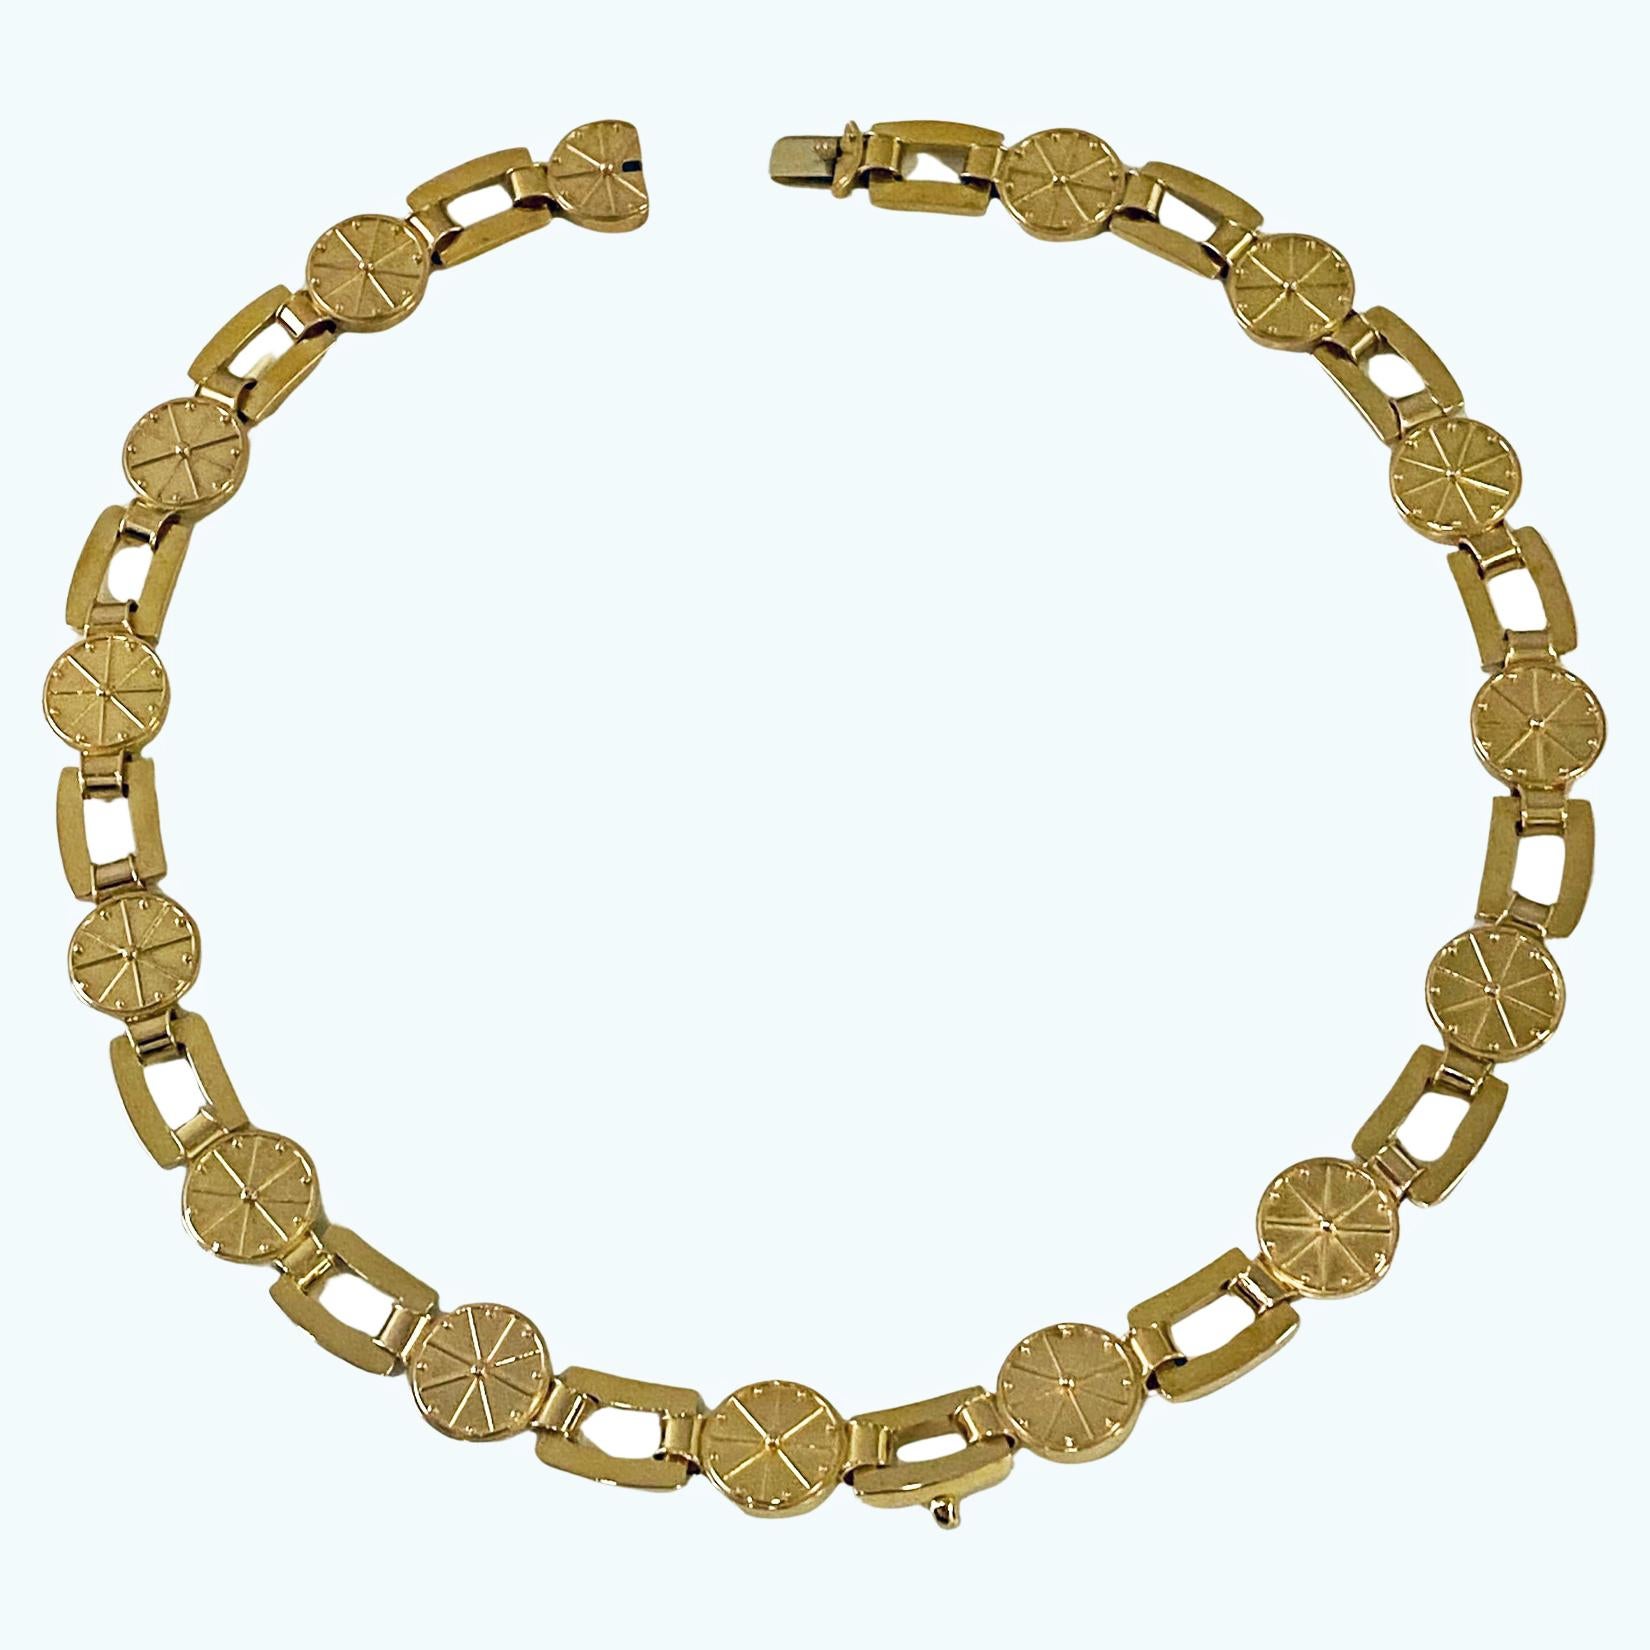 Antike Gold-Halskette Englisch CIRCA 1860. Besteht aus rechteckigen und kreisförmigen Gliedern, die teilweise mit einem Strahlenmuster verziert sind. Zungenverschluss, der sich dem Glied anpasst. Ballenhakenbefestigung zur Aufnahme eines